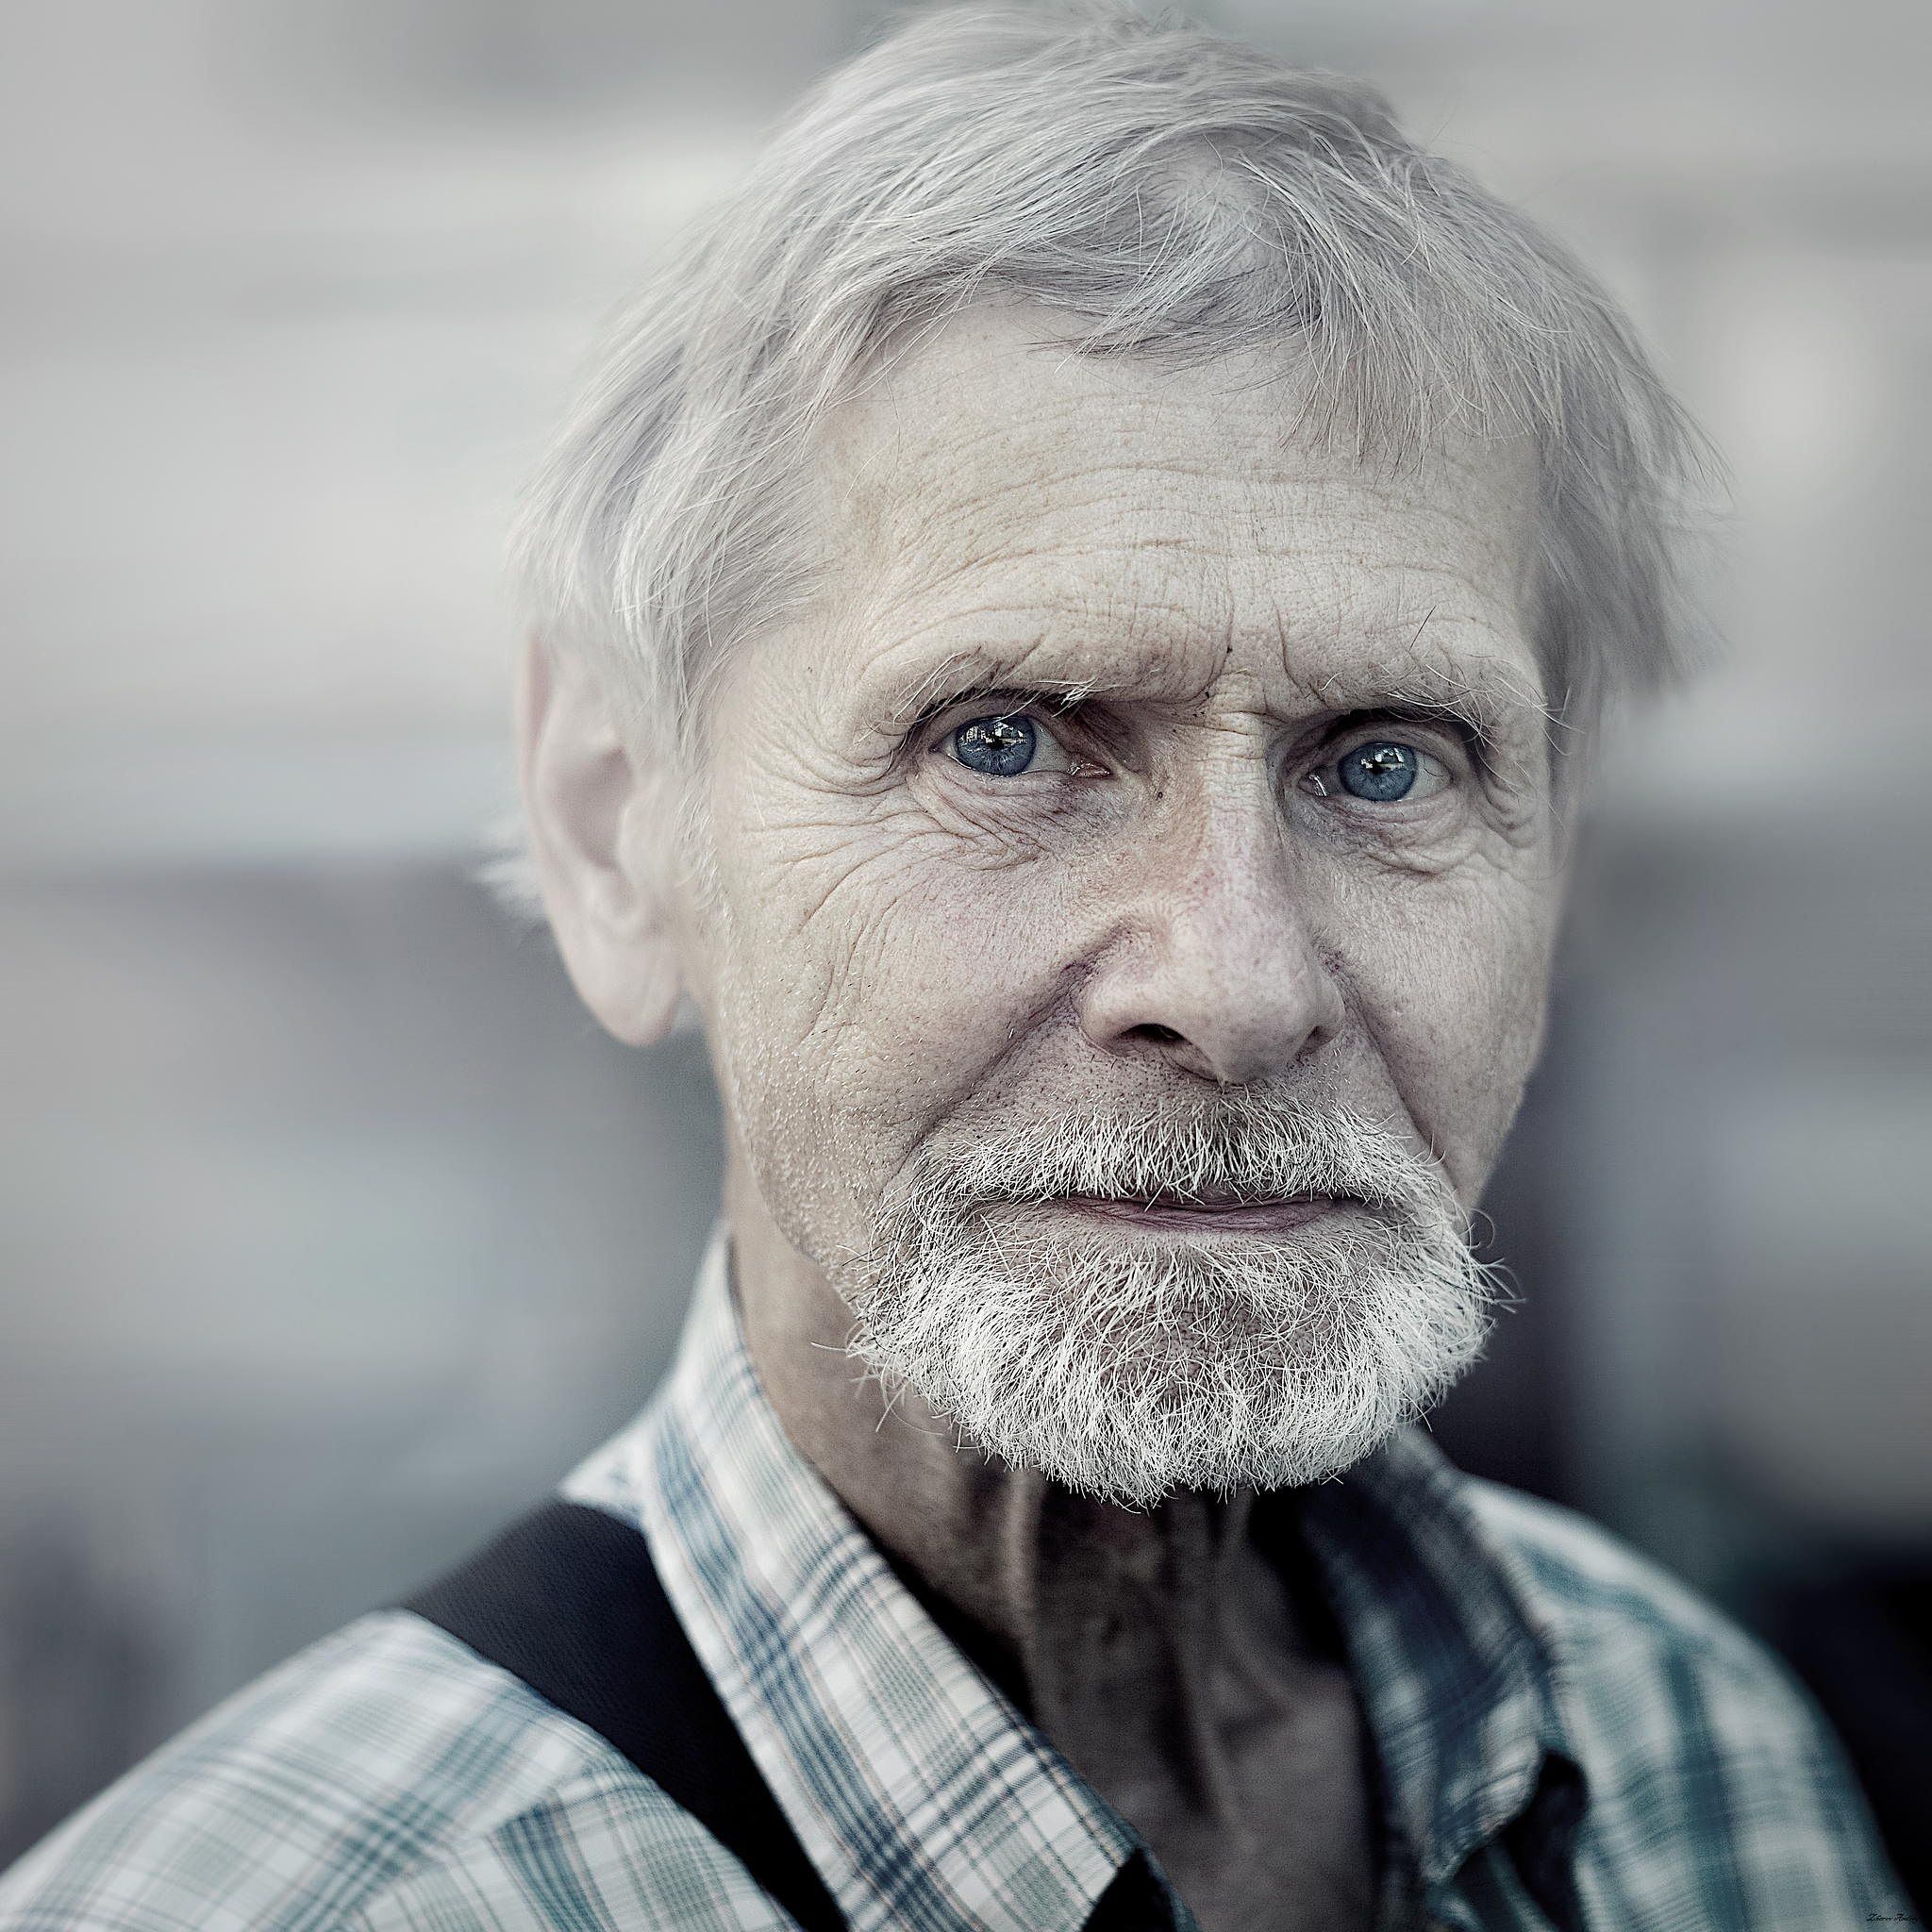 Русские девушки пожилые мужчины. Фотопортрет старика. Пожилой мужчина. Портрет пожилого мужчины. Фотопортрет пожилого человека.